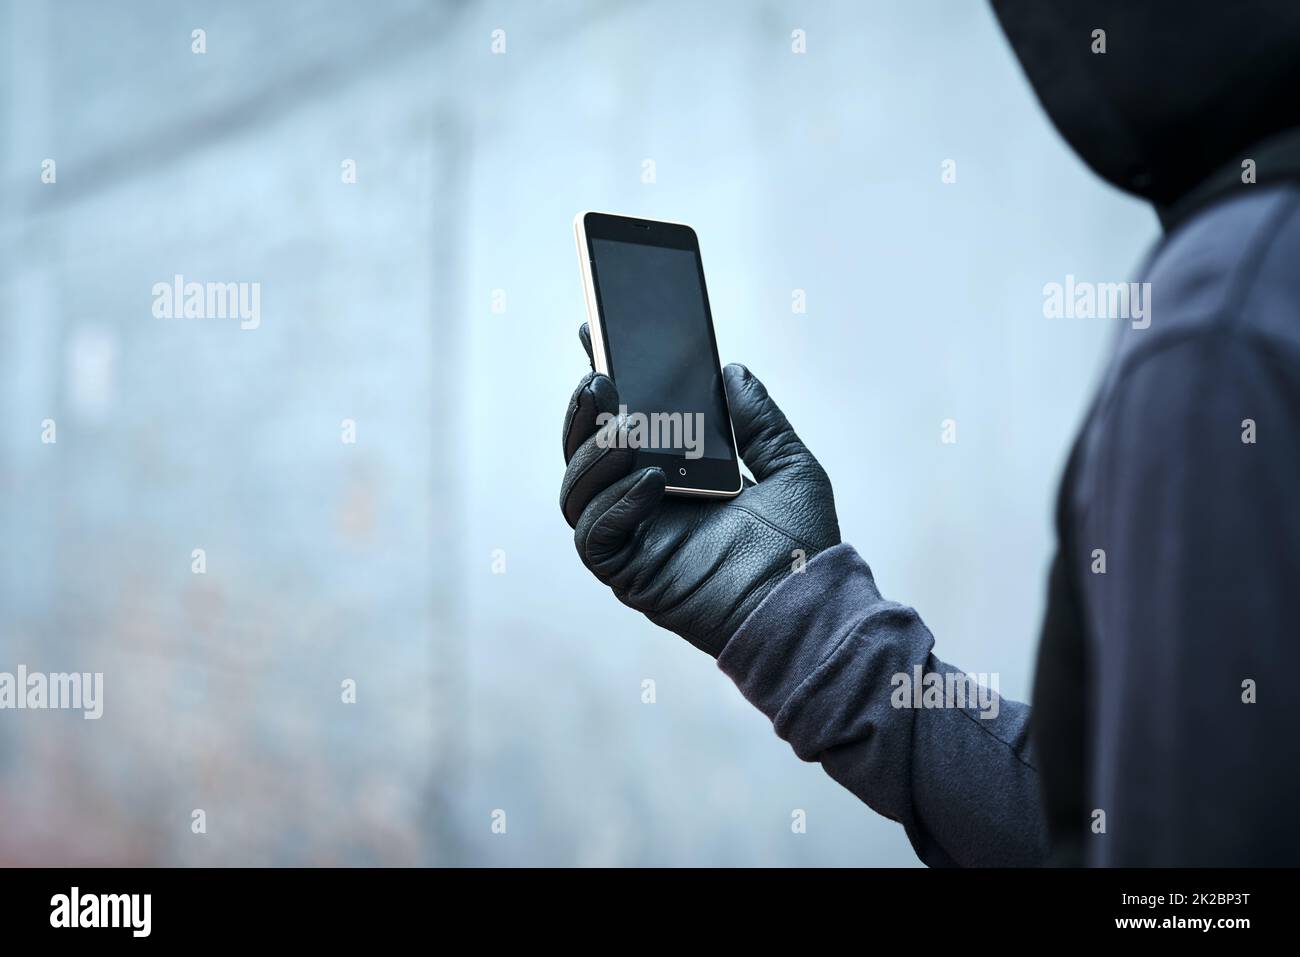 Einen kurzen Blick darauf werfen, wo als nächstes schlecht zuschlagen wird. Aufnahme eines männlichen Einbrechers, der sein Telefon im Freien benutzt. Stockfoto